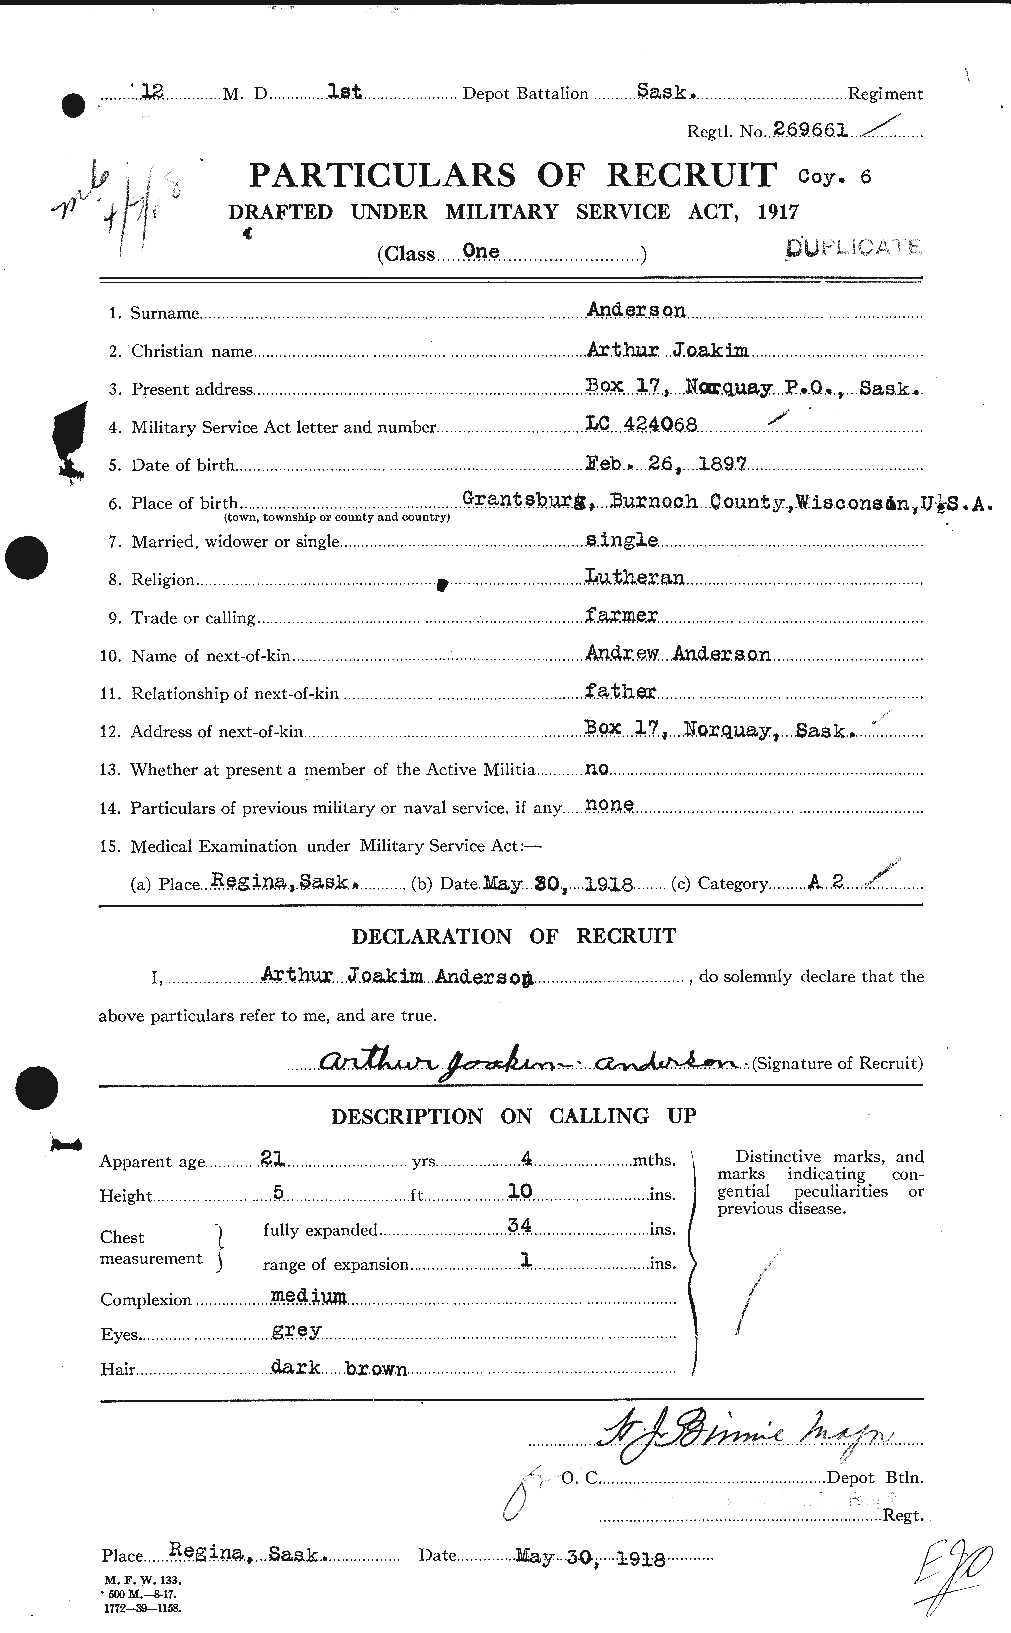 Dossiers du Personnel de la Première Guerre mondiale - CEC 209353a